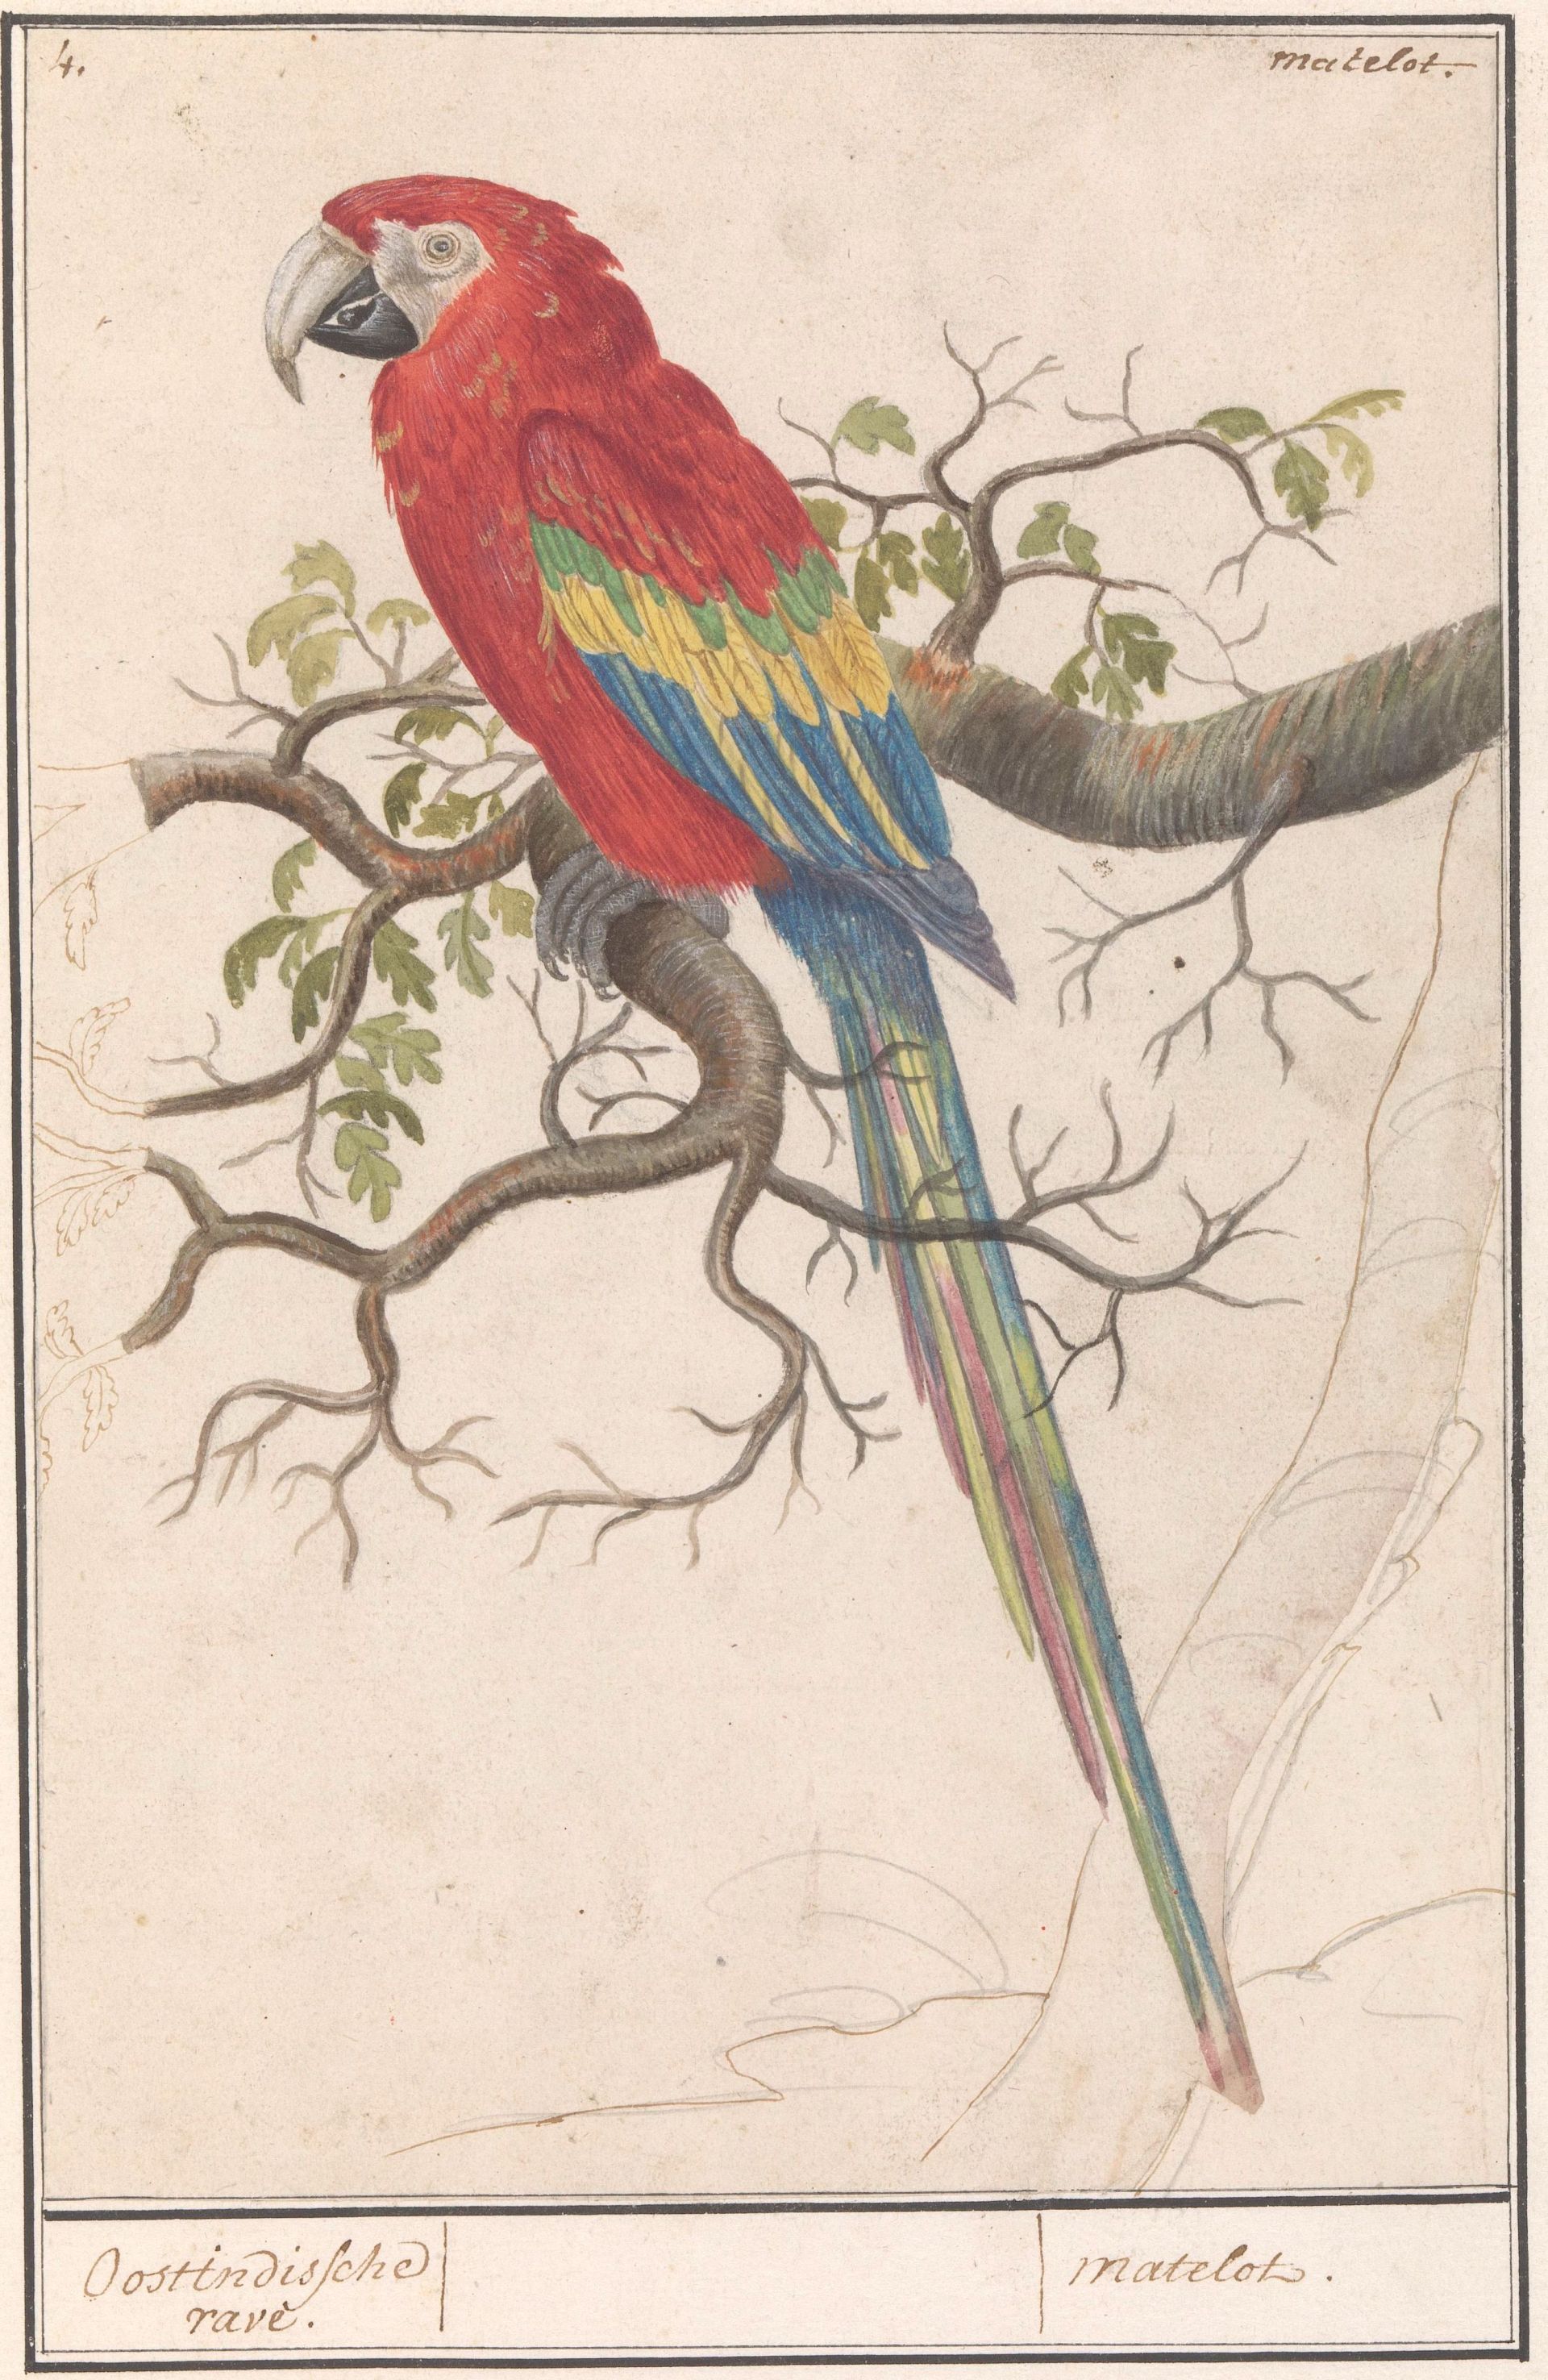 In 1594 mag de geteisterde Zutphense bevolking zich vergapen aan een “voogell uuith Brasilien”. Misschien was het wel deze geelvleugelara (Ara macao) in een album met tekeningen van vogels, gemaakt rond 1600. (Particuliere collectie, bruikleen Rijksmuseum)